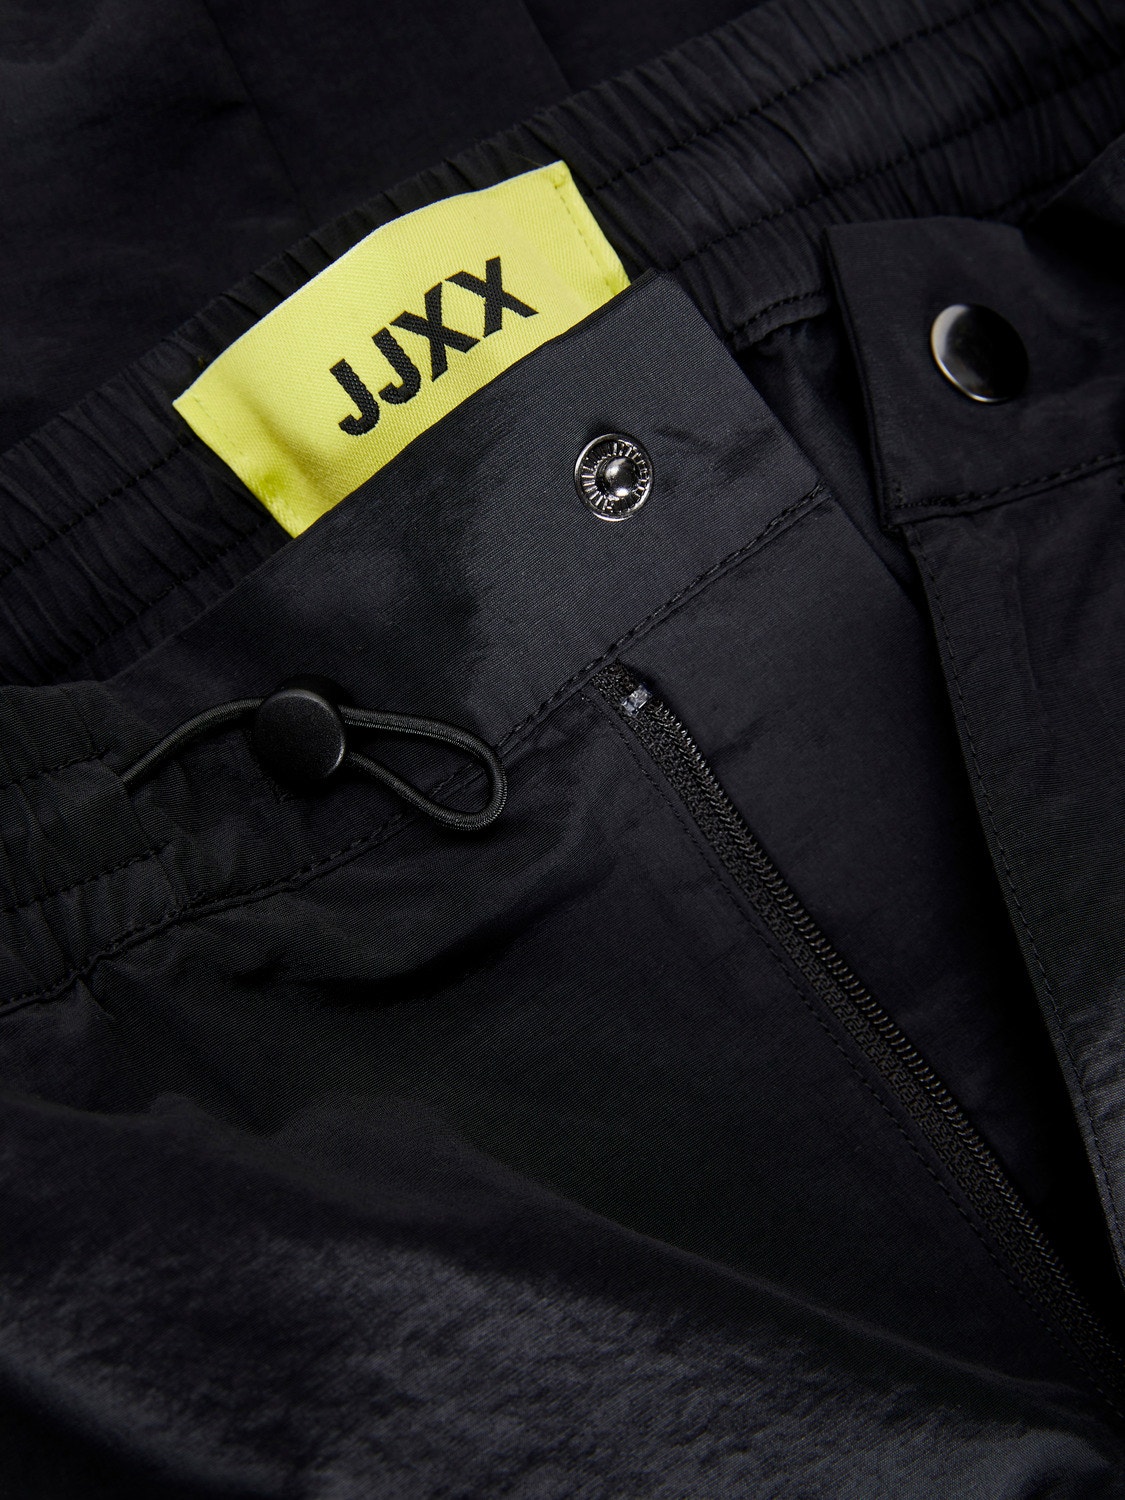 JJXX JXGABBY Spodnie bojówki -Black - 12241089